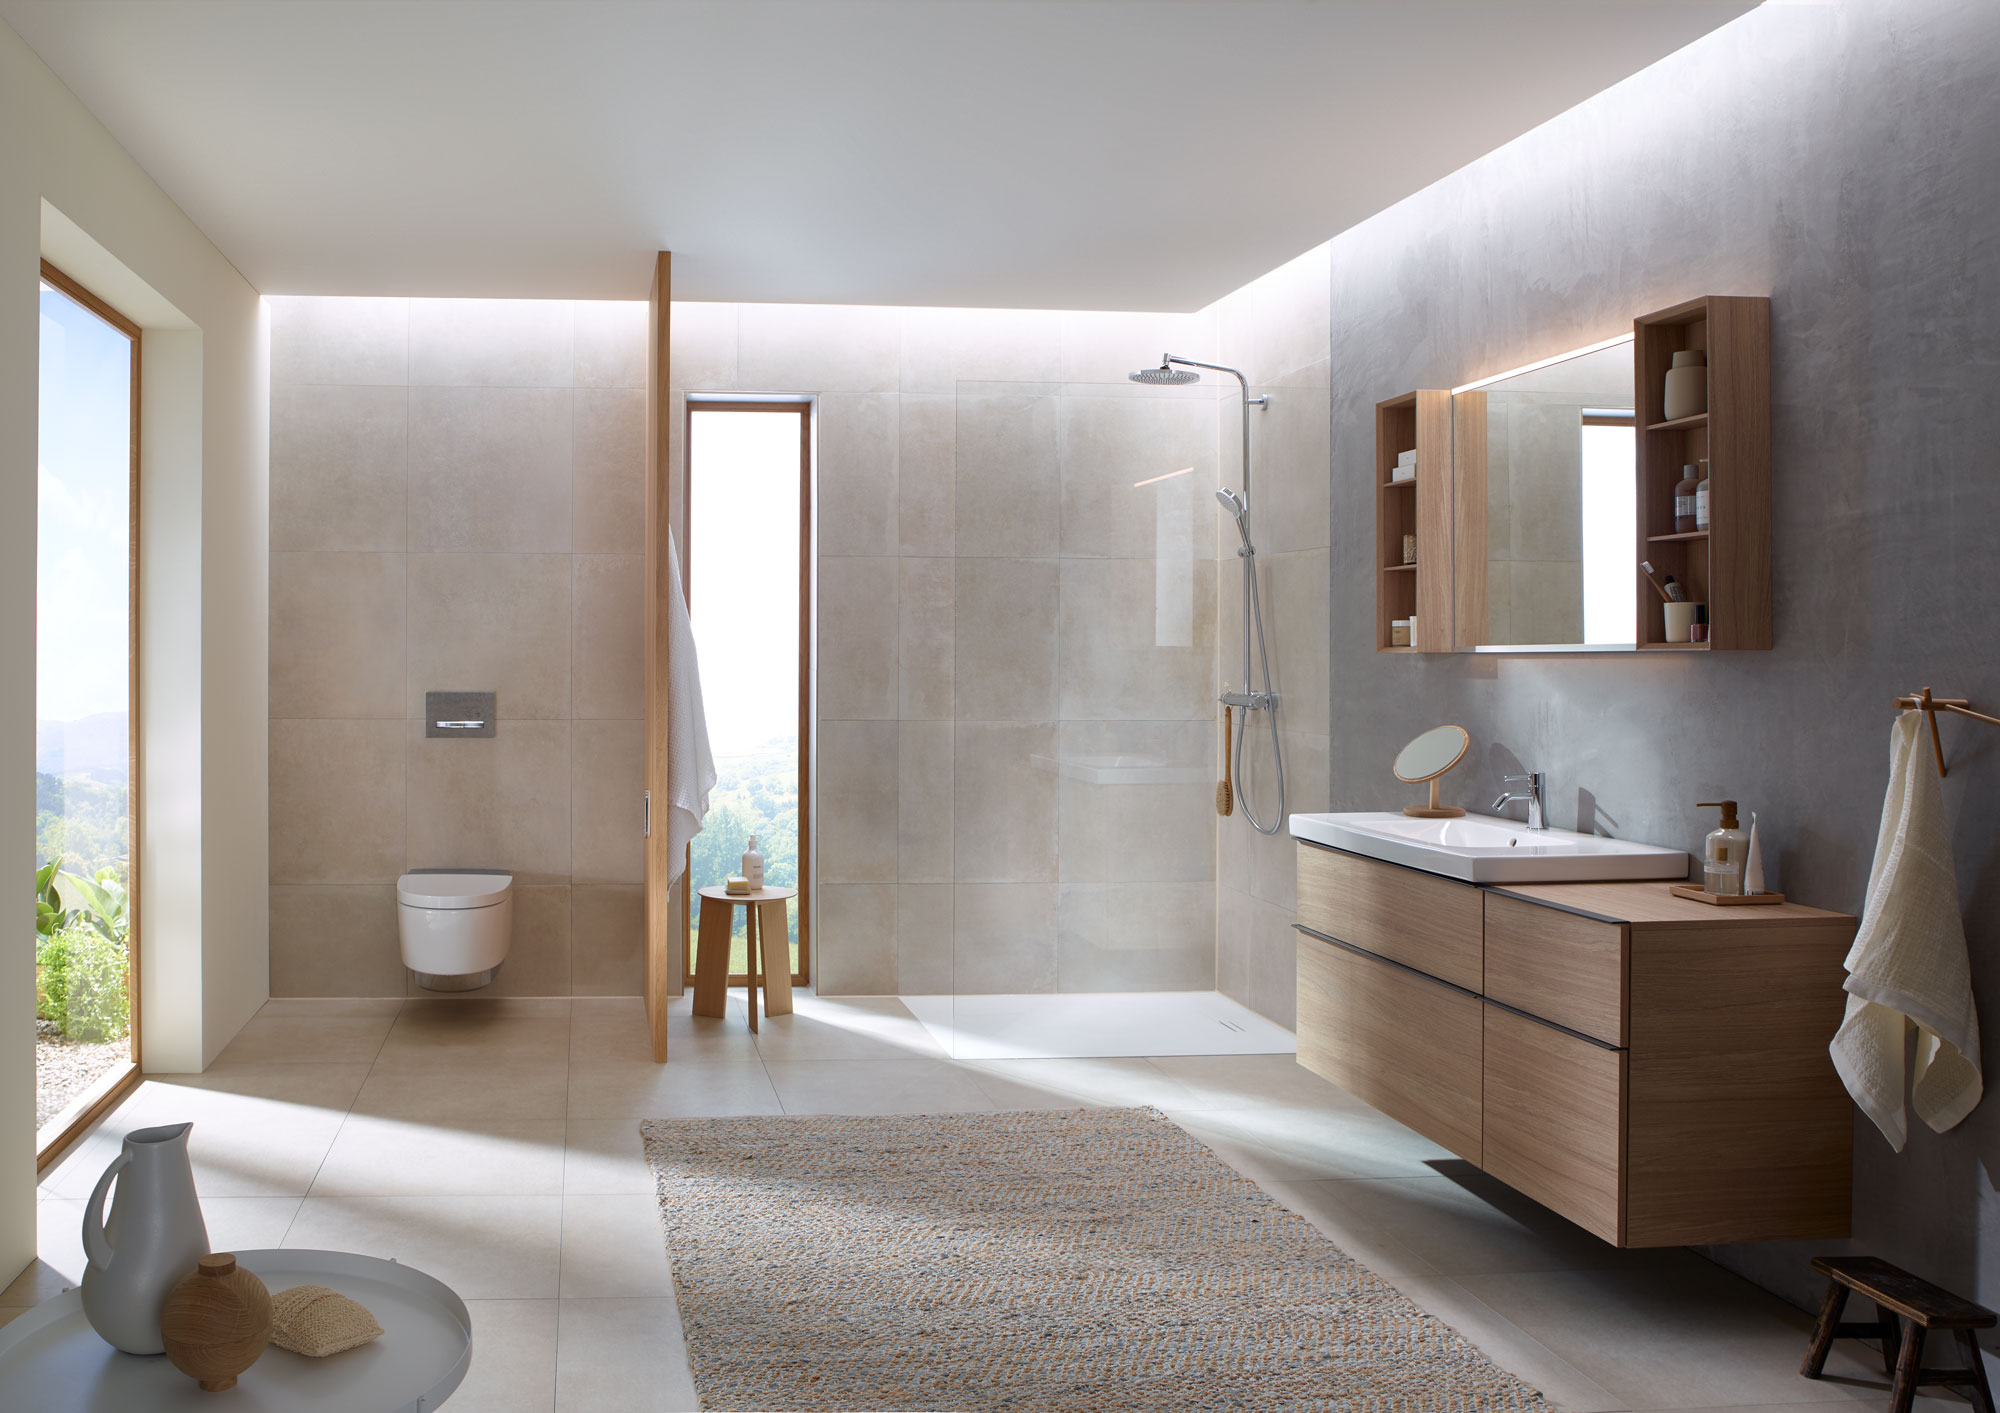 luxus: Holzbadmöbel, Abtrennung zu WC, Glasfront bei Dusche